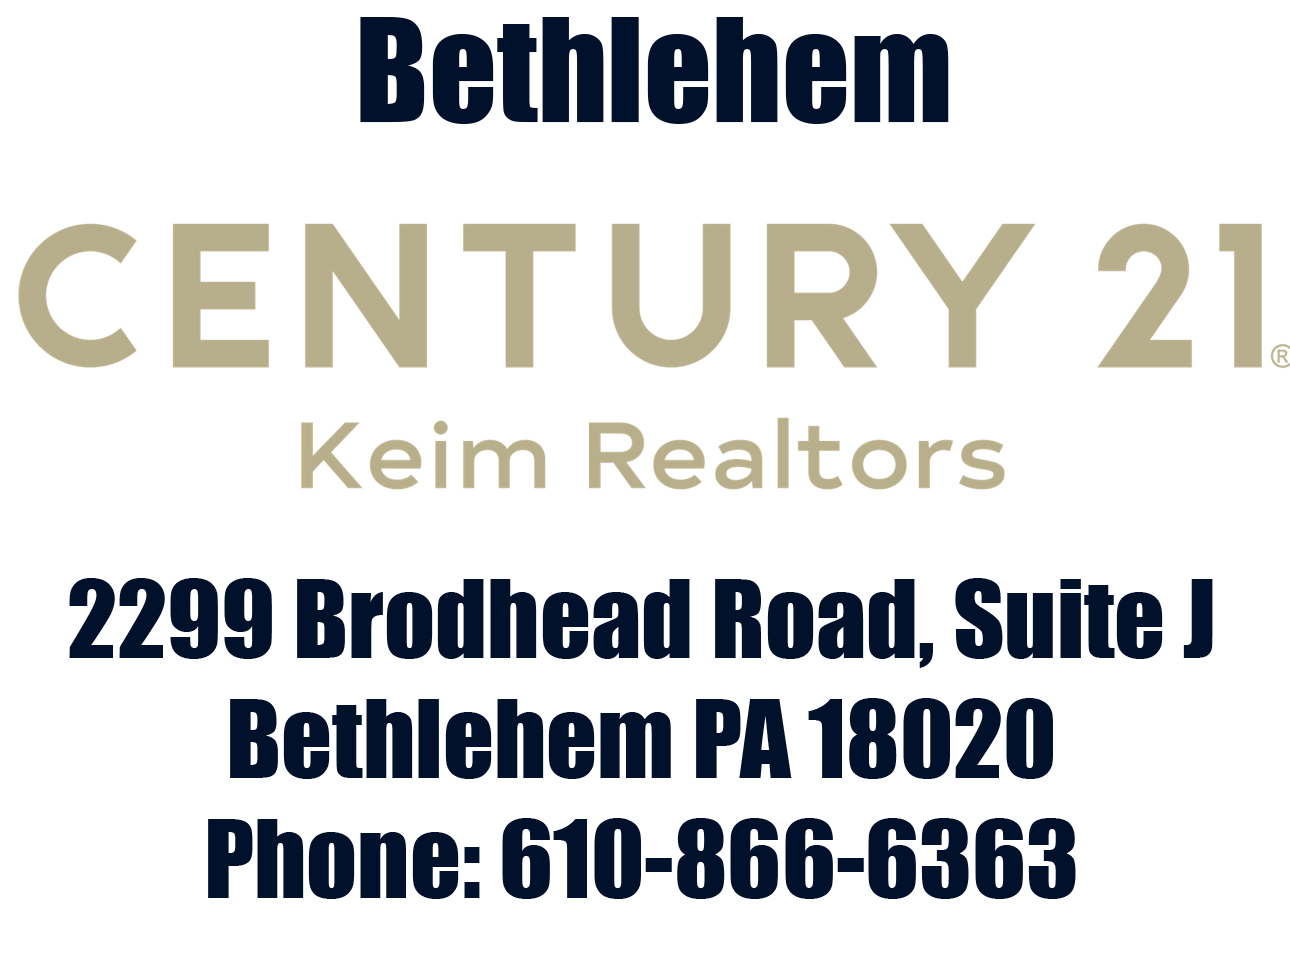 Century 21 Keim located in Bethlehem Pennsylvania